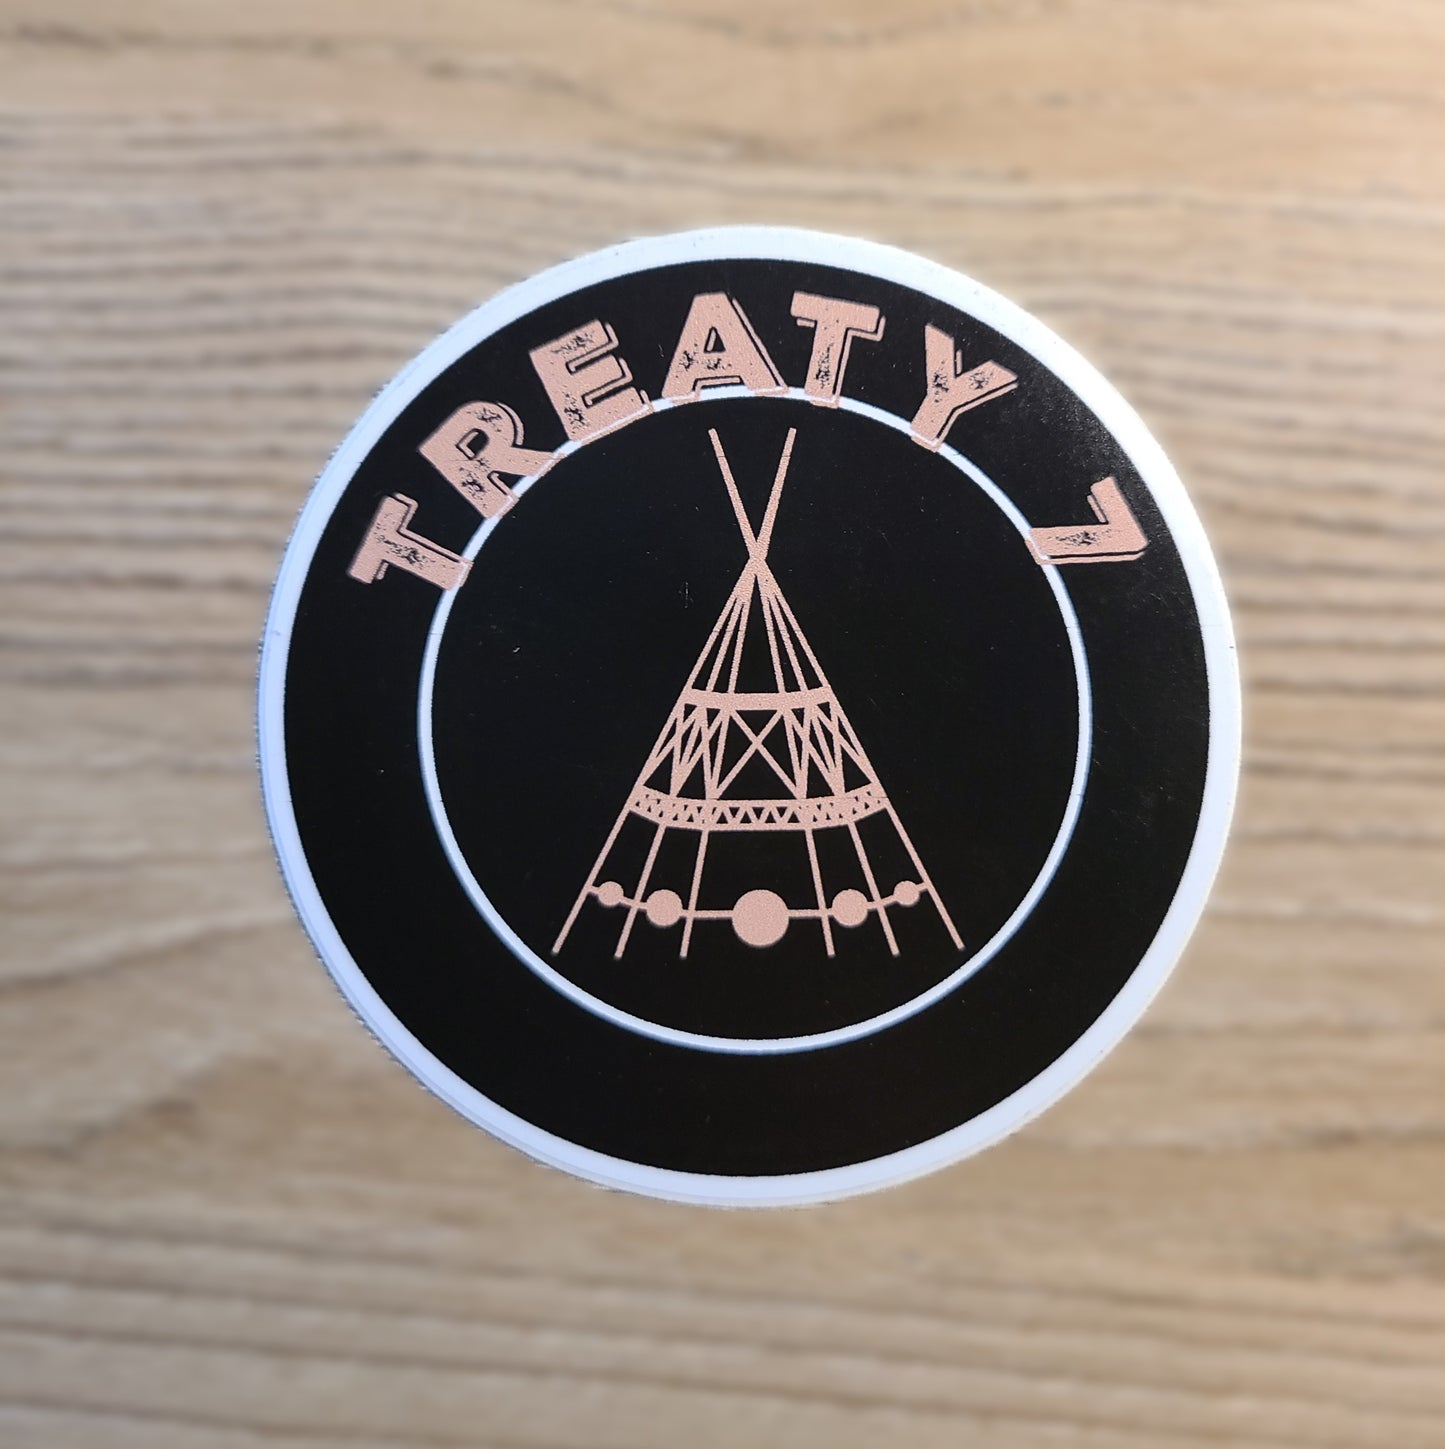 Treaty 7 stickers